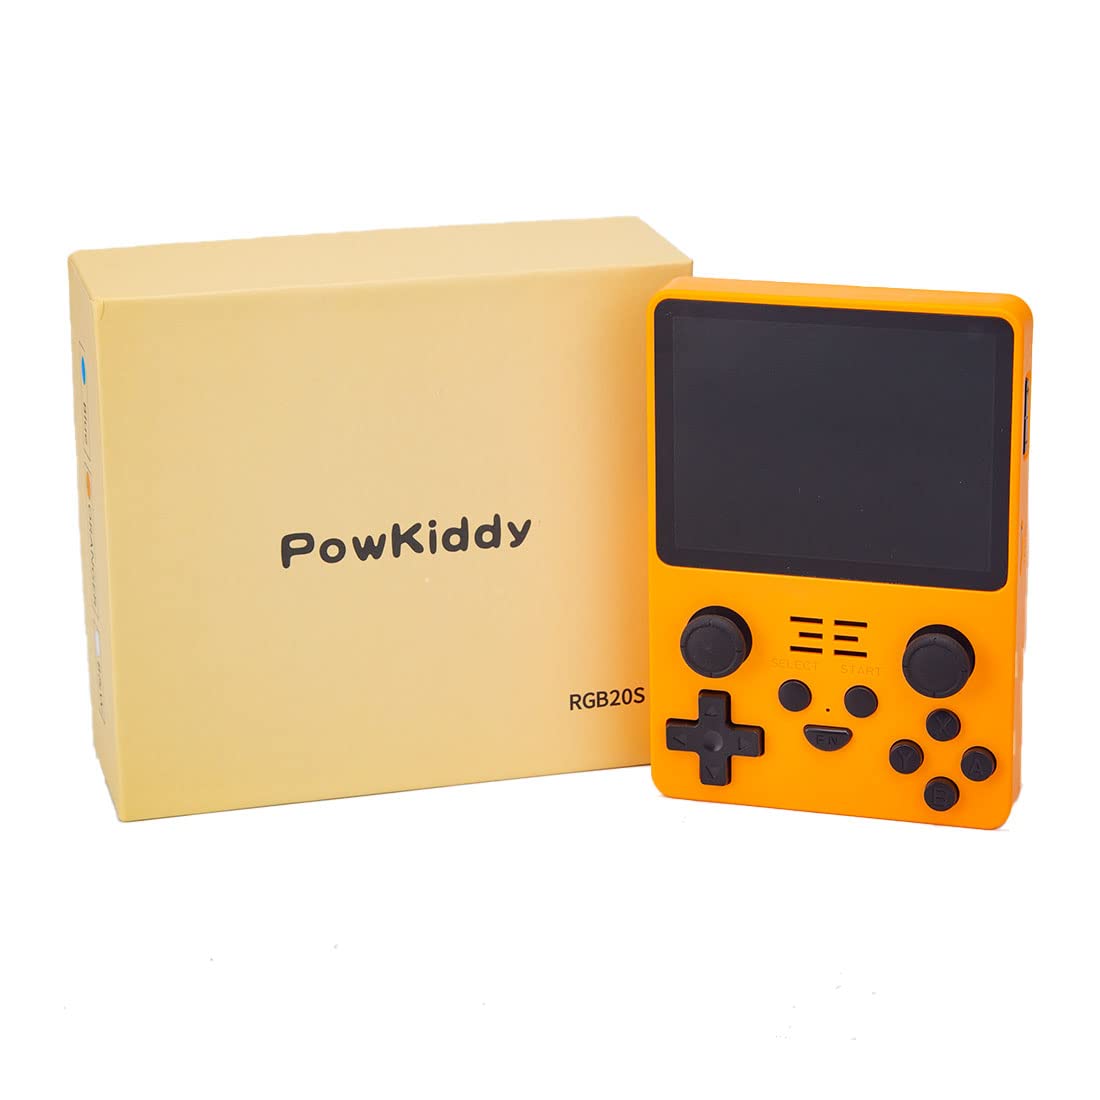 Consola portátil retro Powkiddy RGB20S con 20.000 juegos